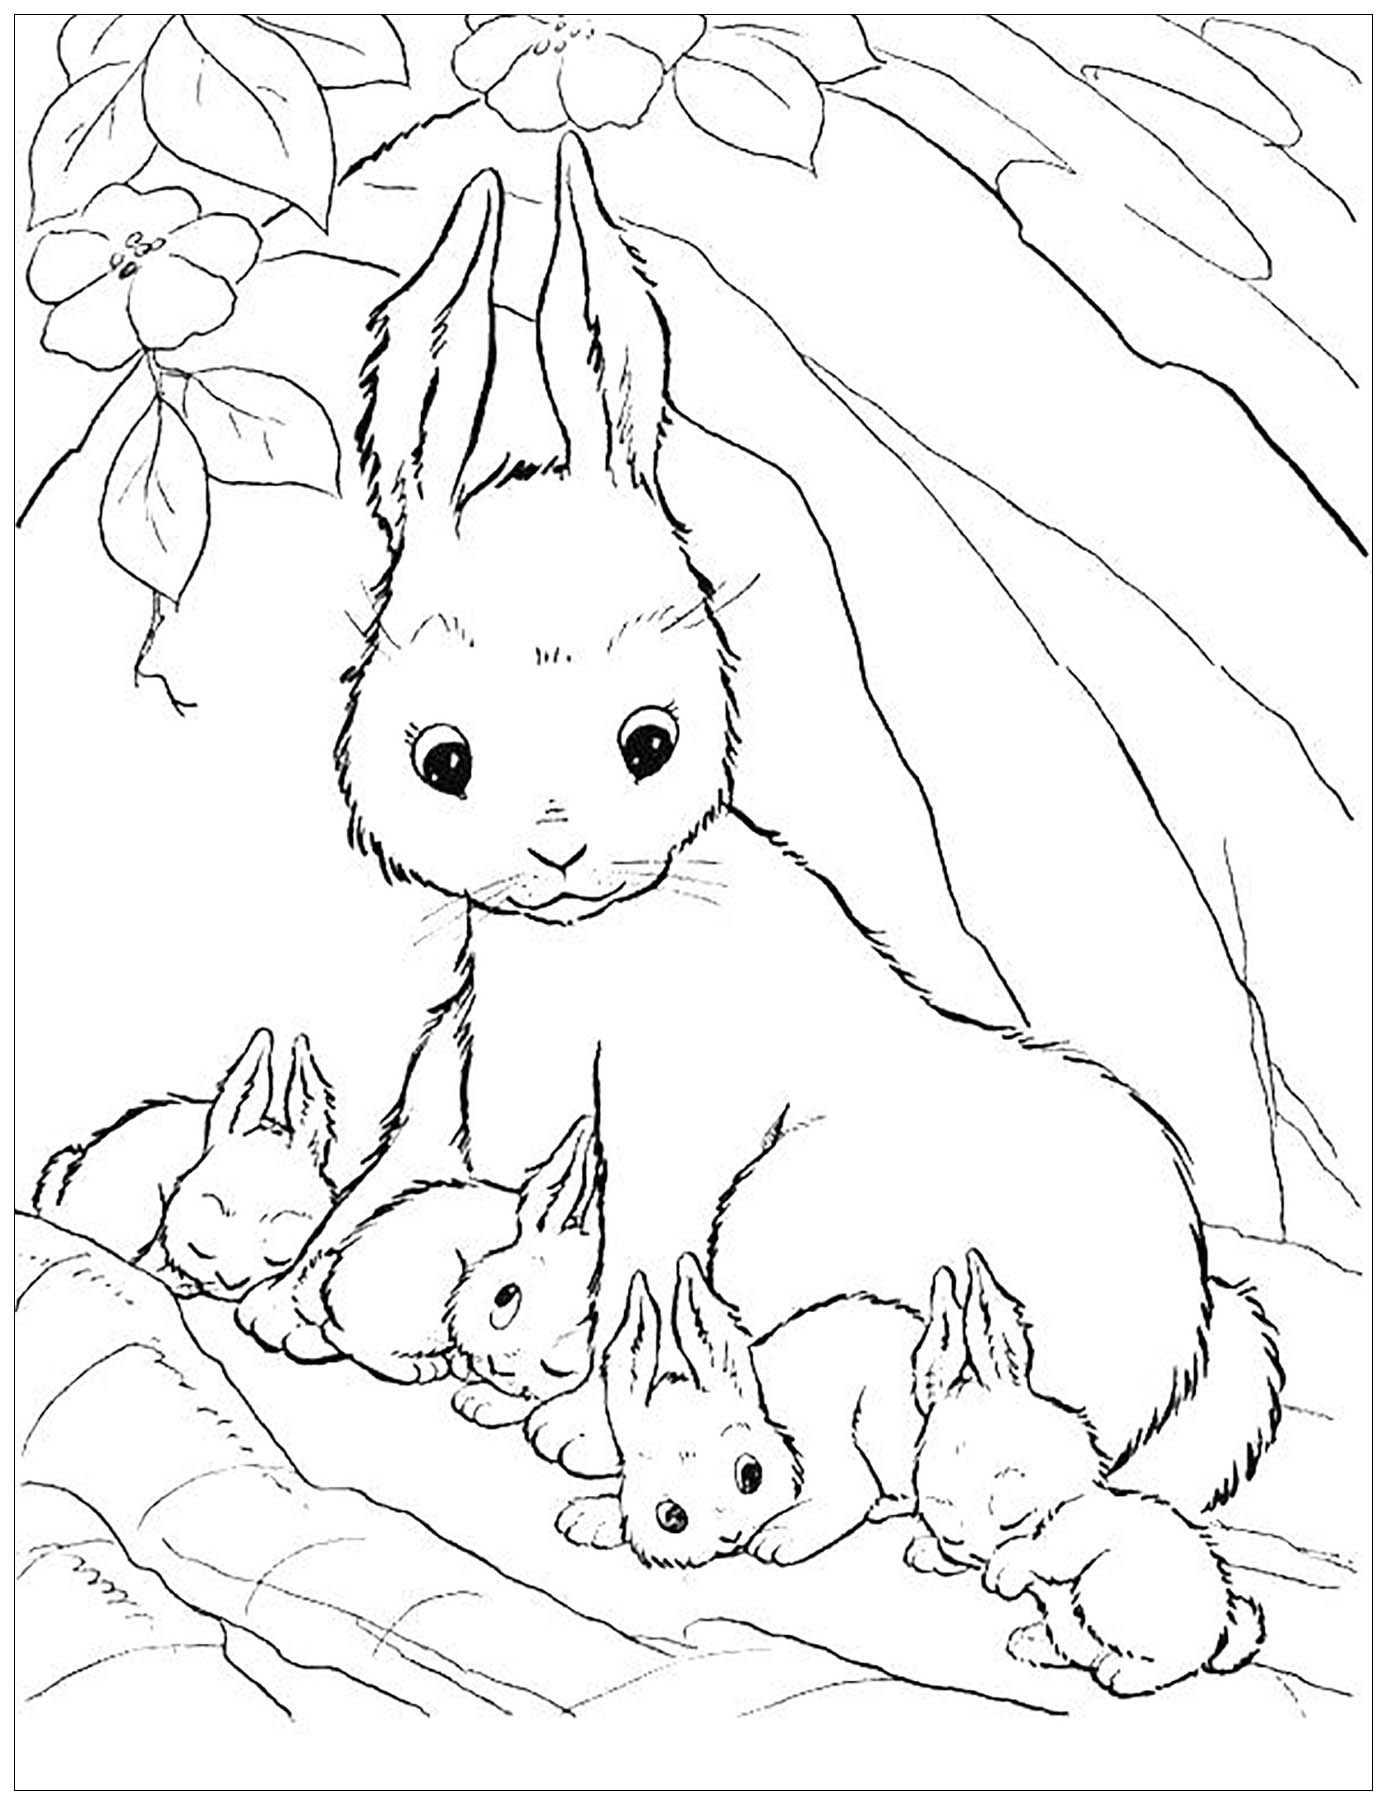 Dessin de lapin à colorier, facile pour enfants